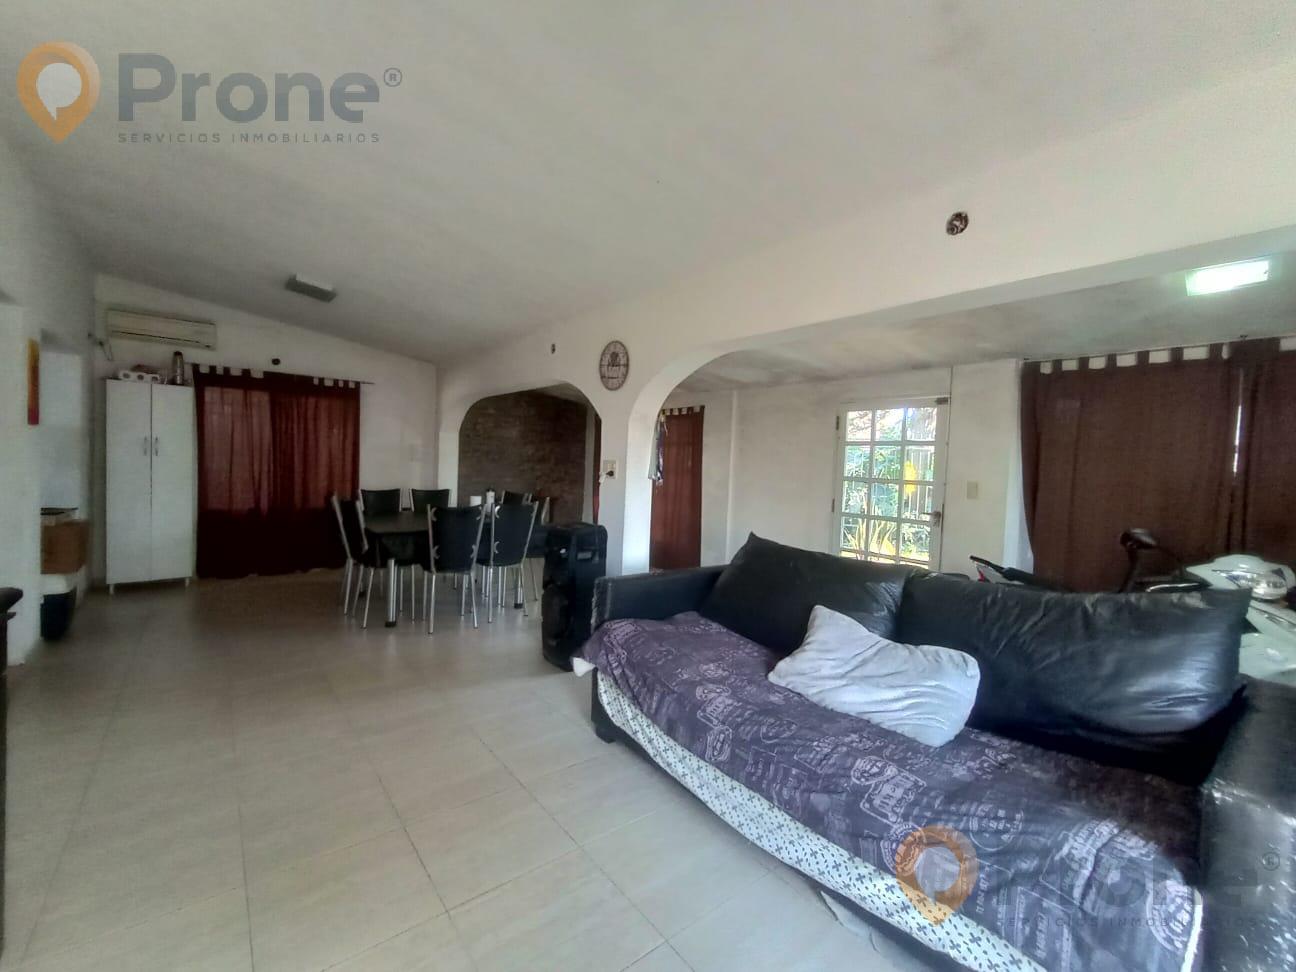 #5331012 | Sale | House | Ricardone (Prone Servicios Inmobiliarios)